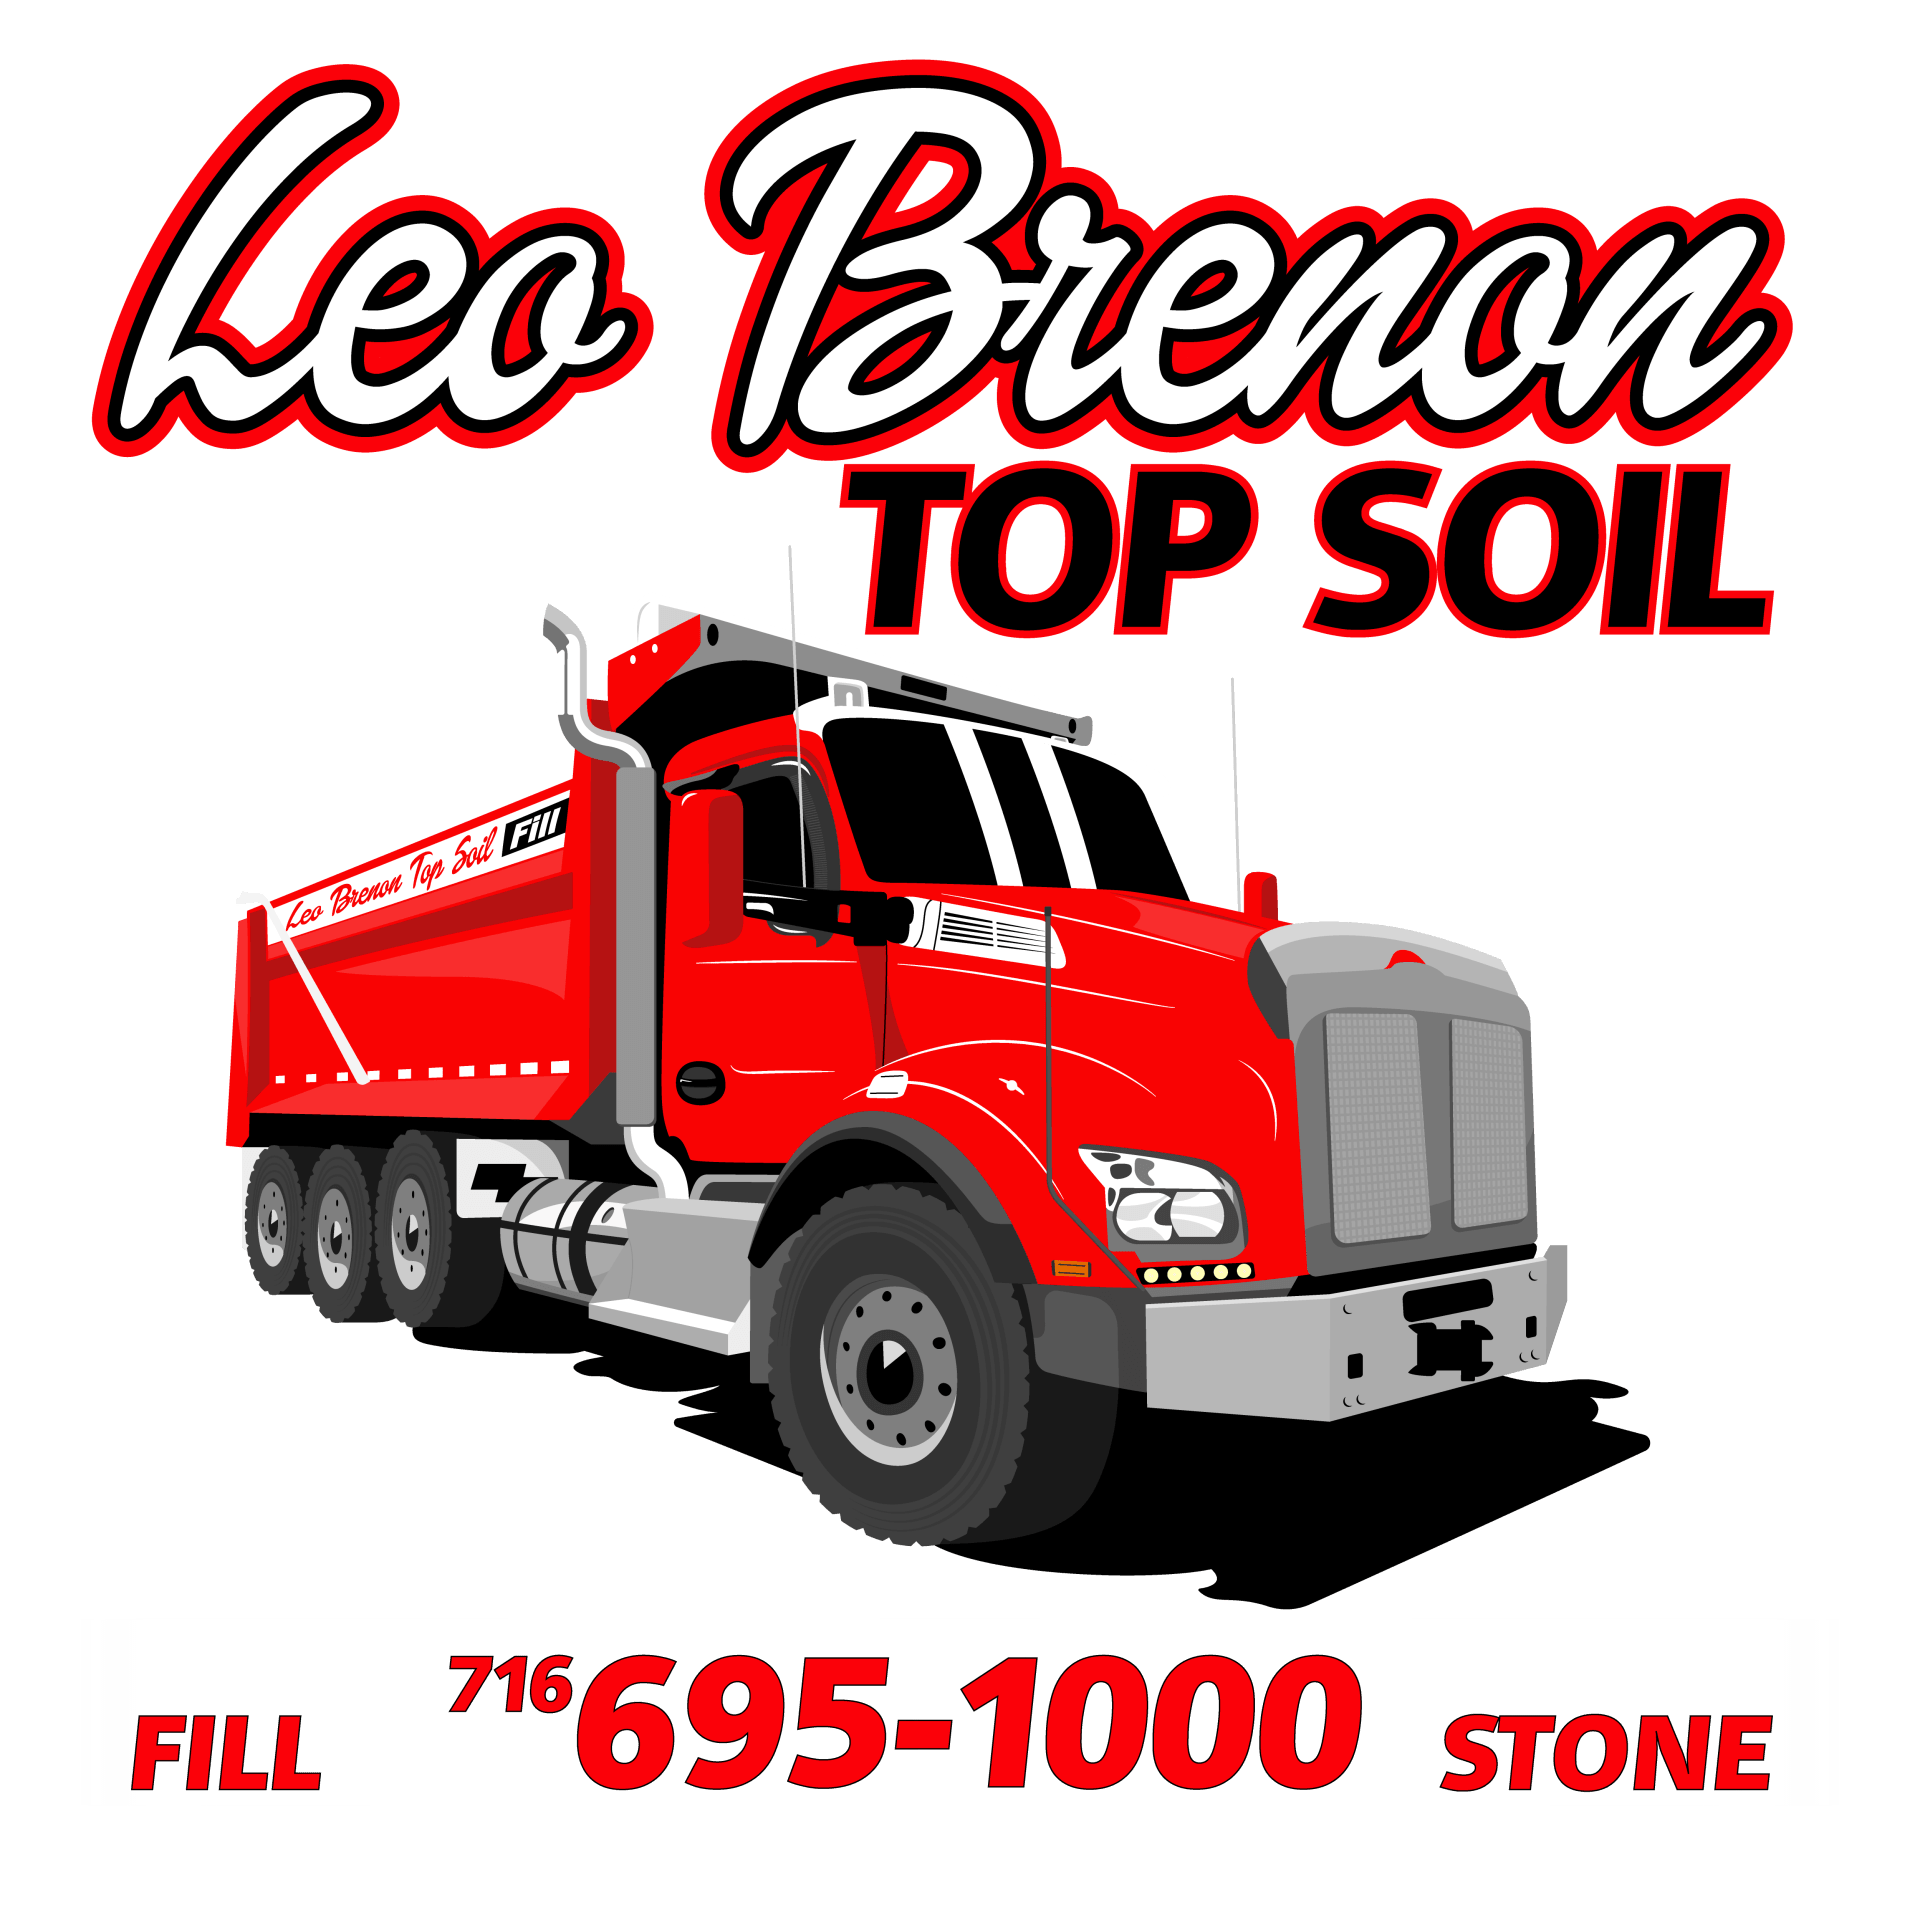 Leo Brenon Top Soil logo